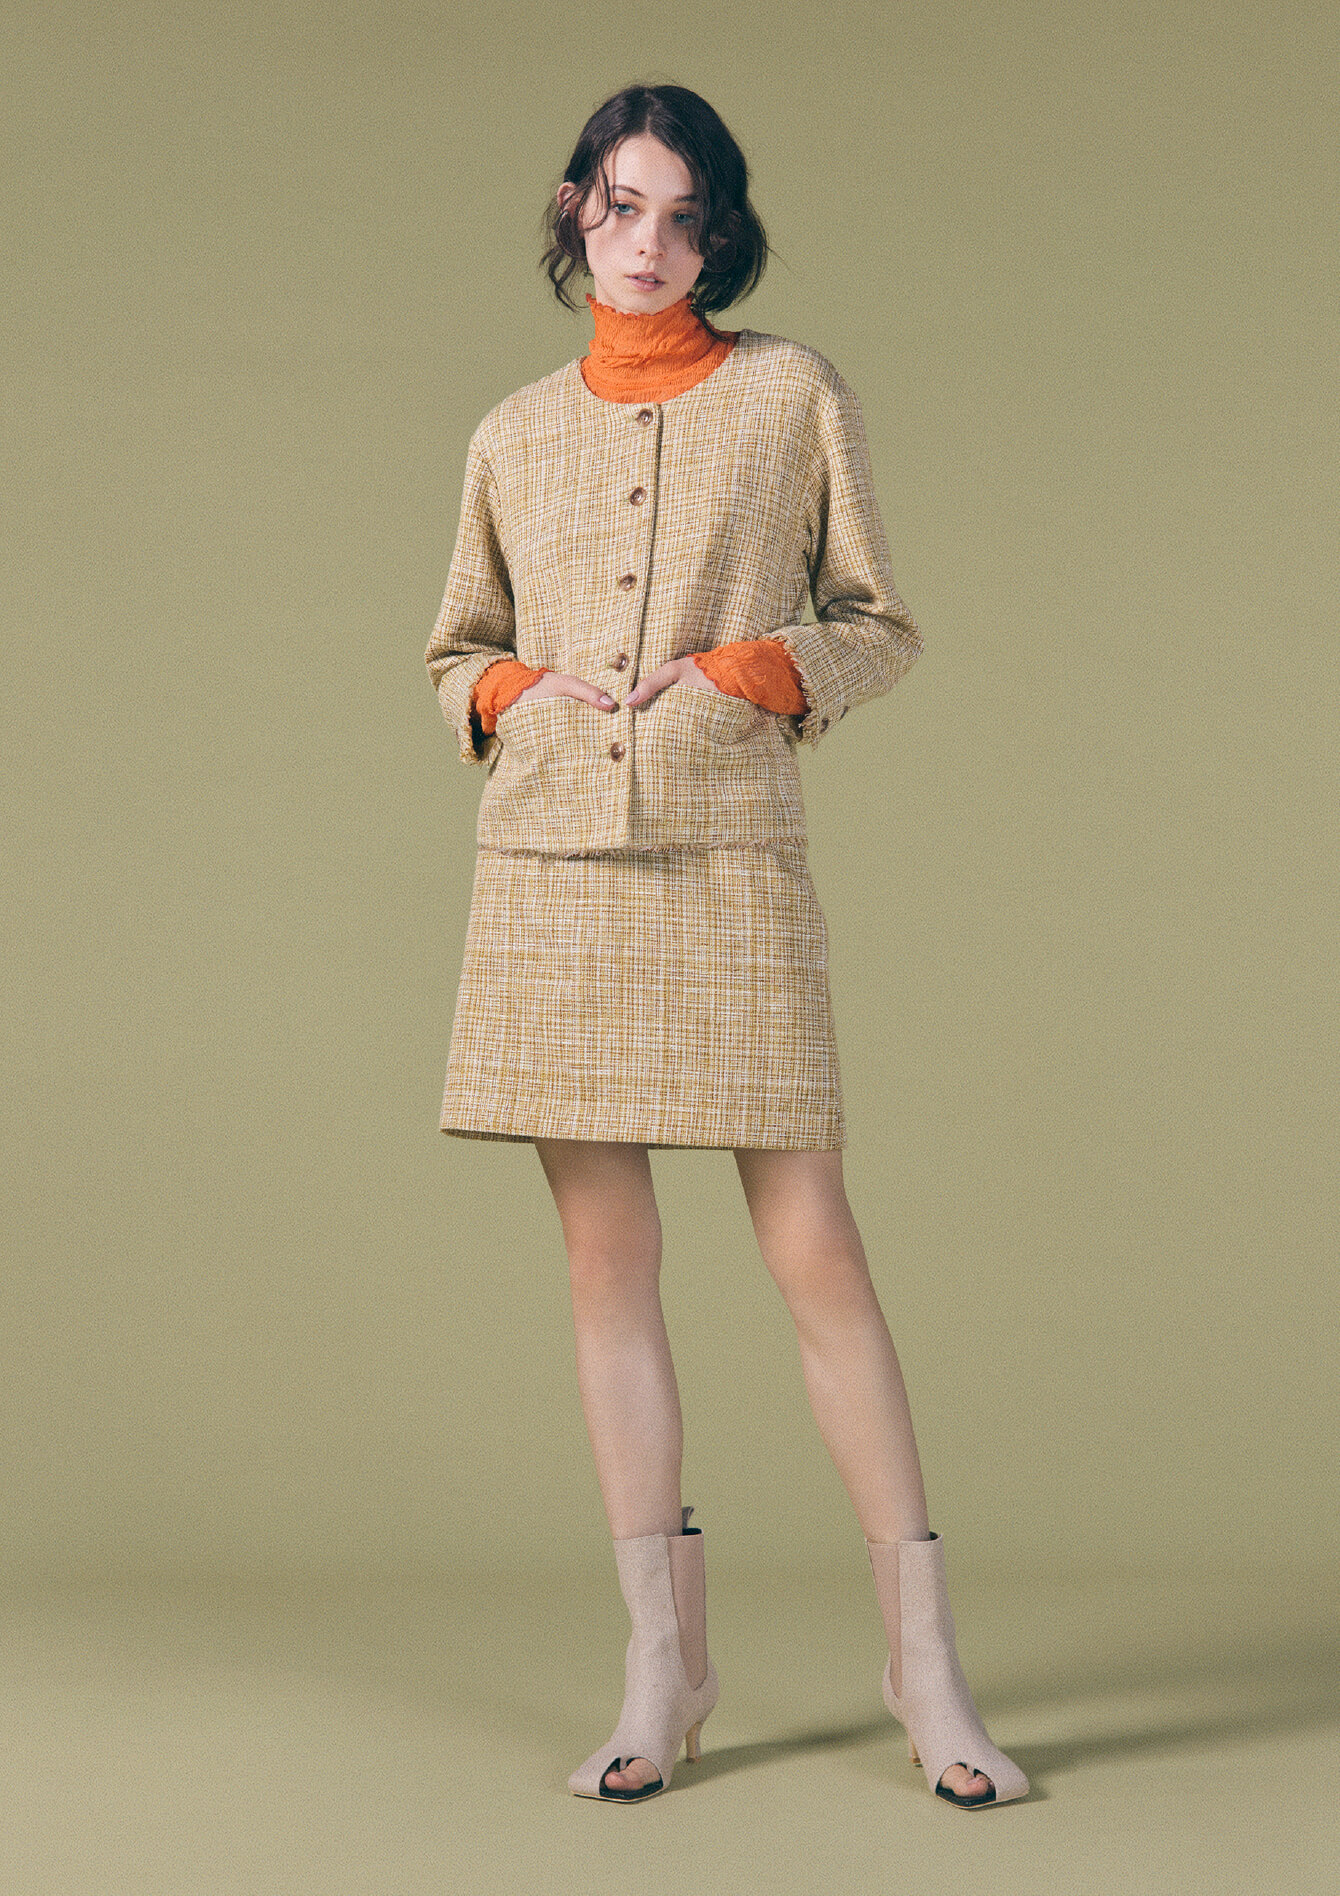 オレンジ色のタートルネックとベージュ色のジャケットとスカートの女性モデルの画像